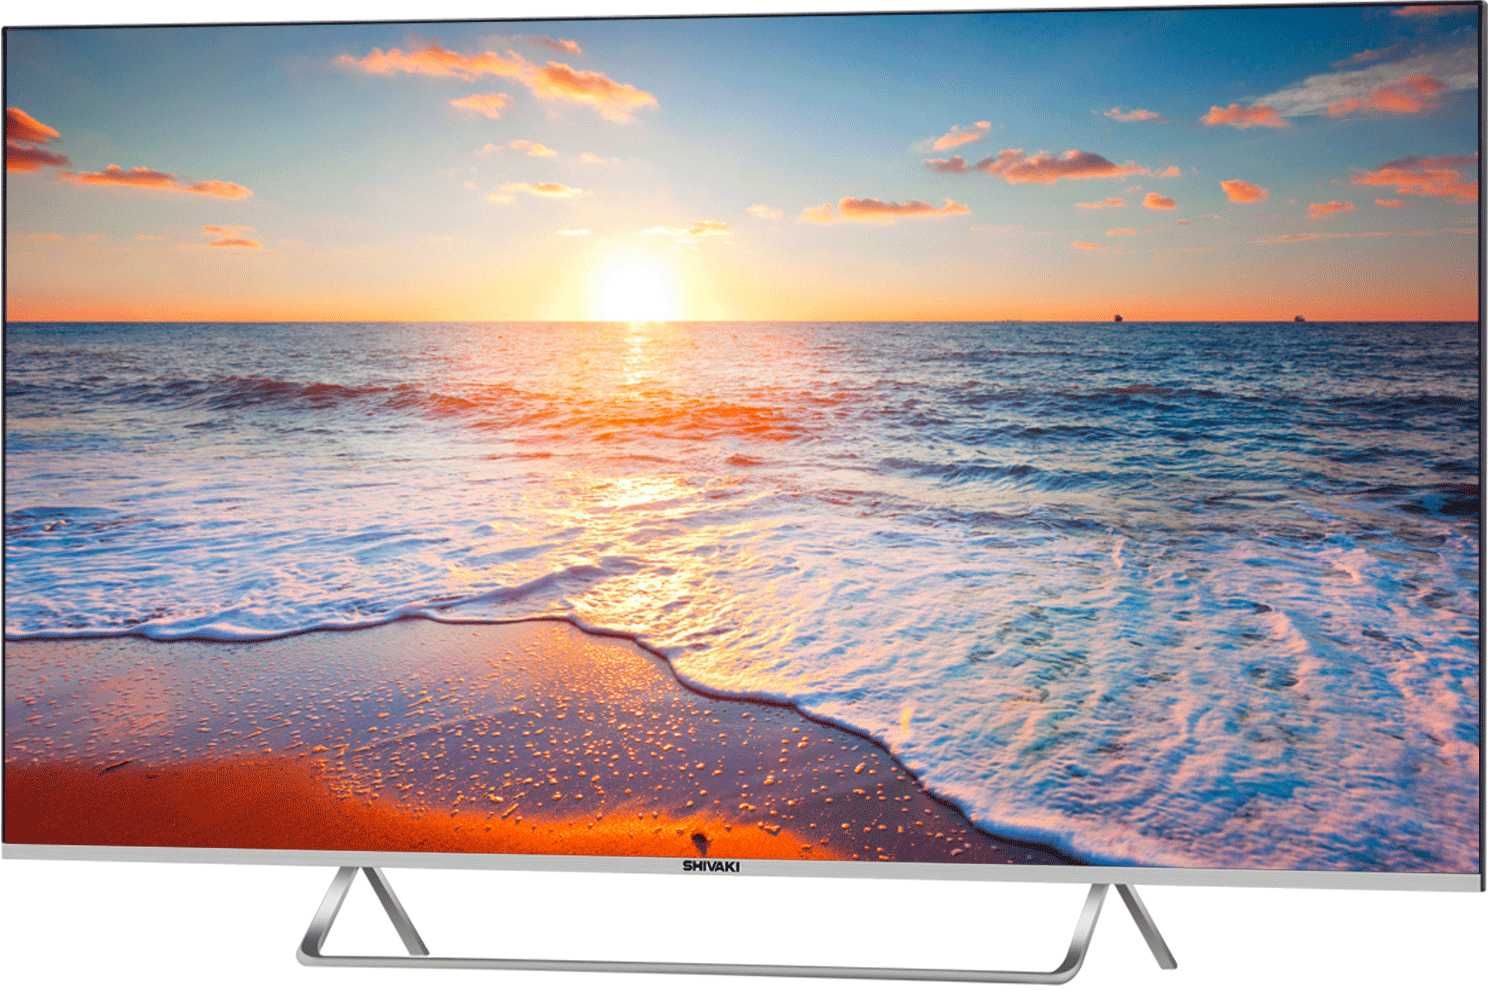 Телевизор NEW SHIVAKI 50H3501 4K SMART  по низкой цене +Доставка!!